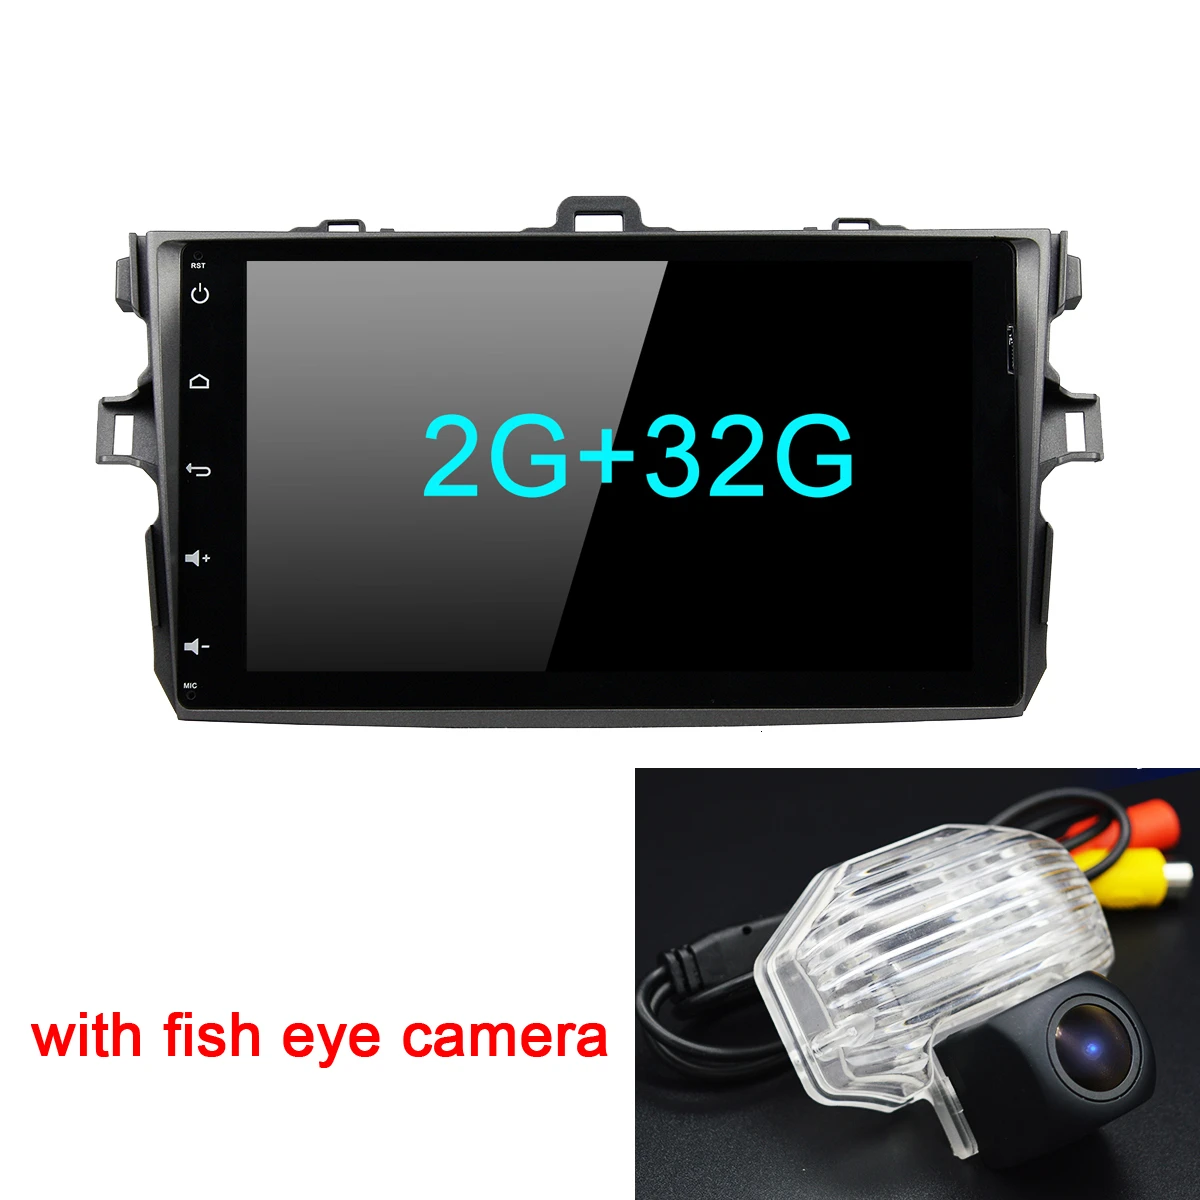 Android 9,0 автомобиль радио мультимедиа плеер для Защитные чехлы для сидений, сшитые специально для Toyota Corolla E140/150 2008 2009 2010 2011 2012 2013 стерео gps навигация 2 din ПК - Цвет: 2G fish eye camera